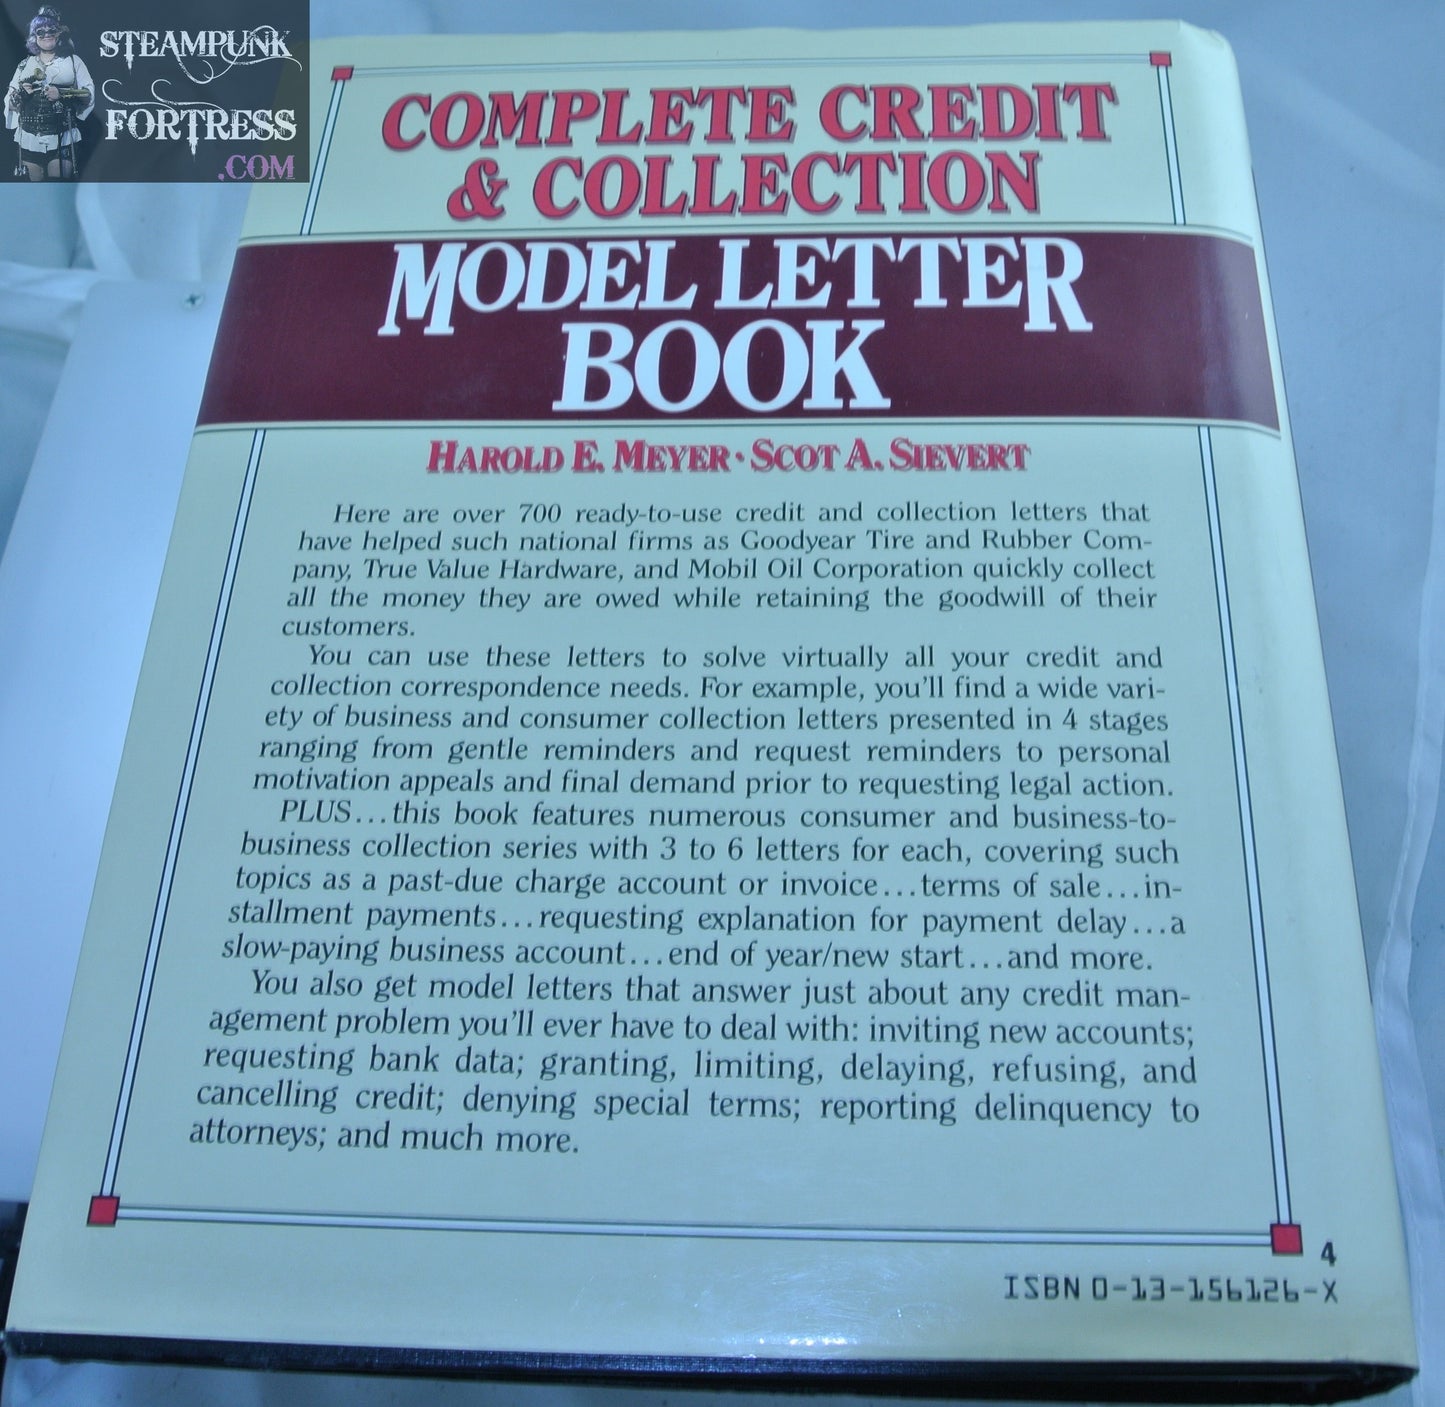 COMPLETE CREDIT COLLECTION MODEL LETTER BOOK HAROLD MEYER HARDCOVER DUSTJACKET GOOD